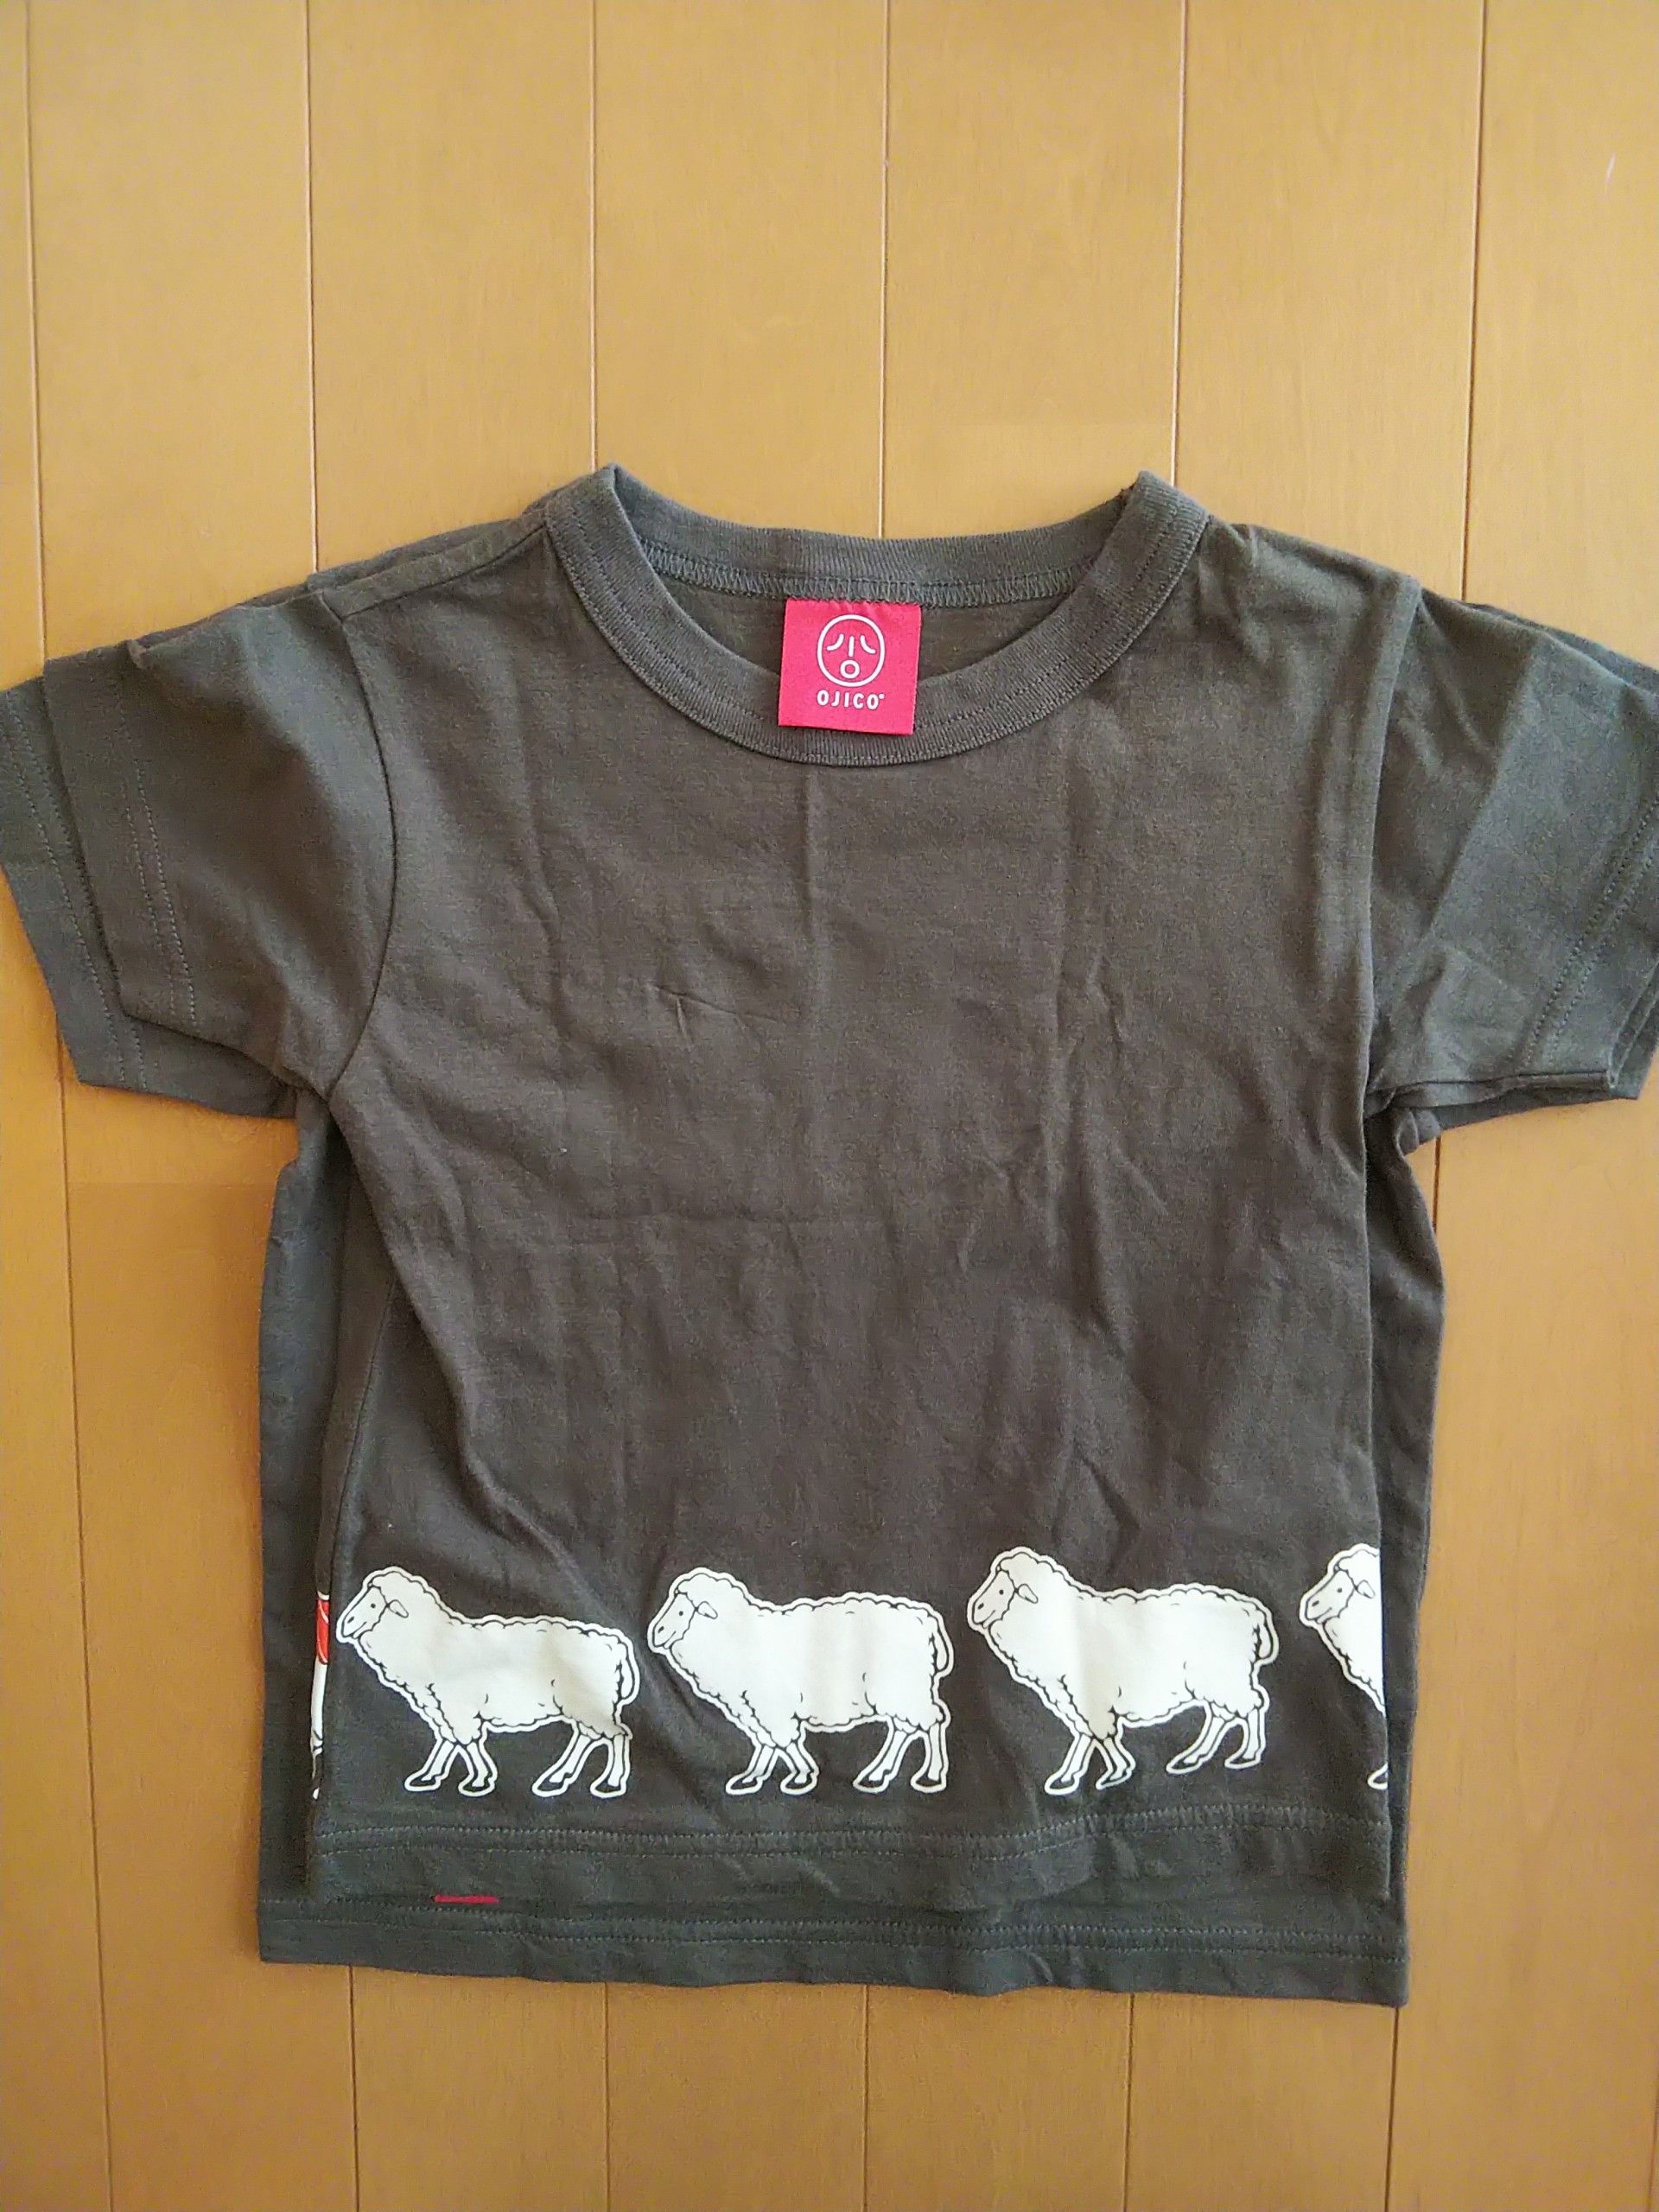 オジコtシャツ 茶トラ家の子供服の買い物 楽天ブログ